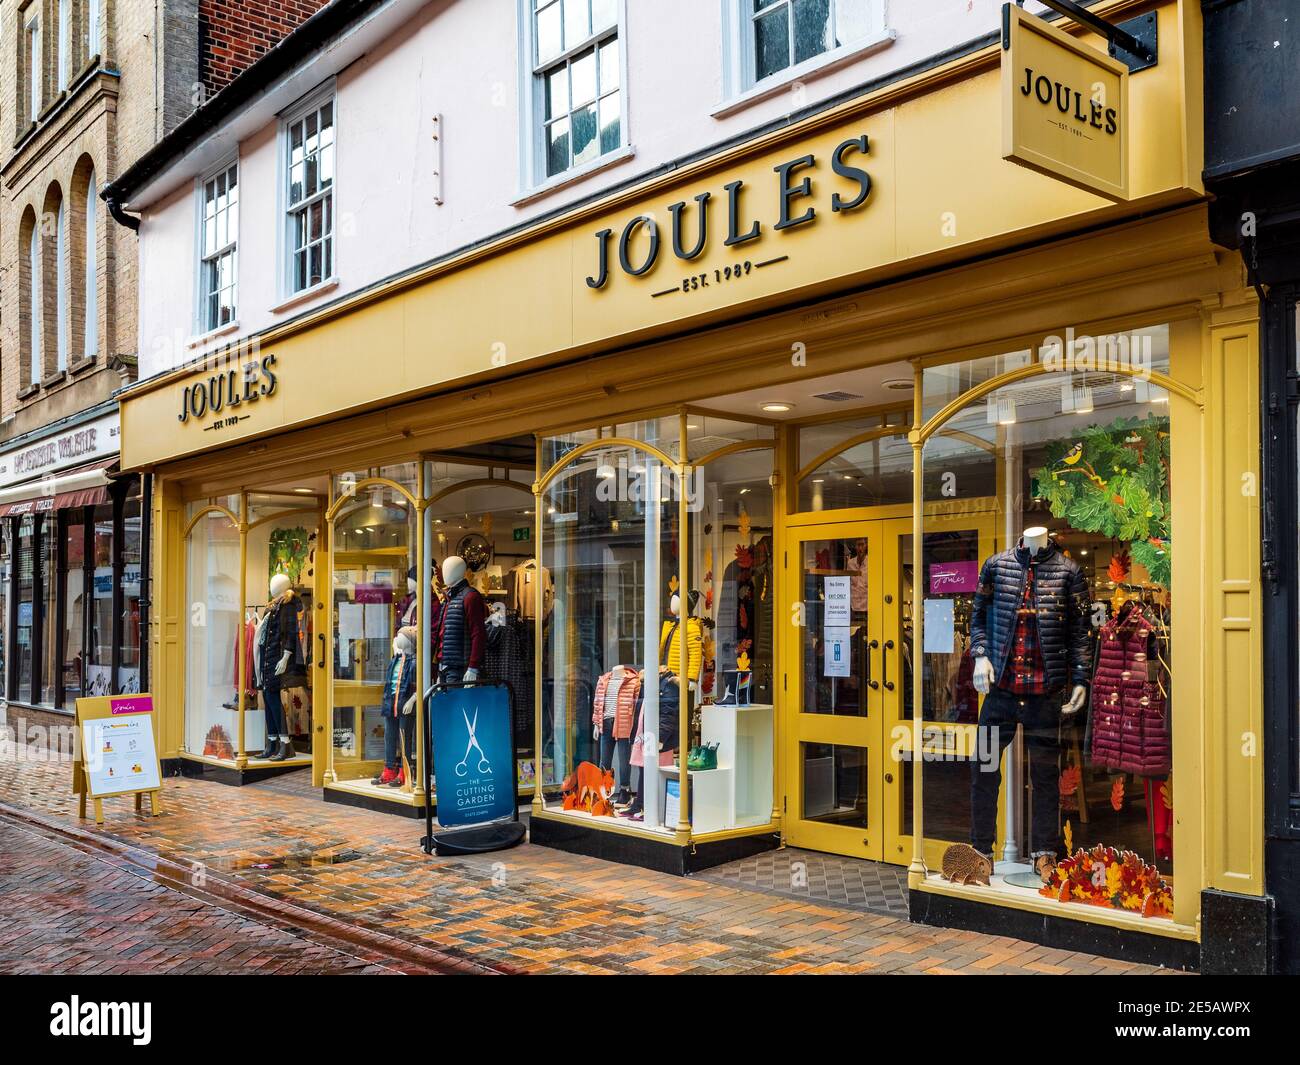 Joules Store - Joules Shop à Ipswich UK - Joules est une chaîne de vêtements basée au Royaume-Uni qui vend des vêtements de style de vie de pays. Fondée en 1989 par Tom Joule. Banque D'Images